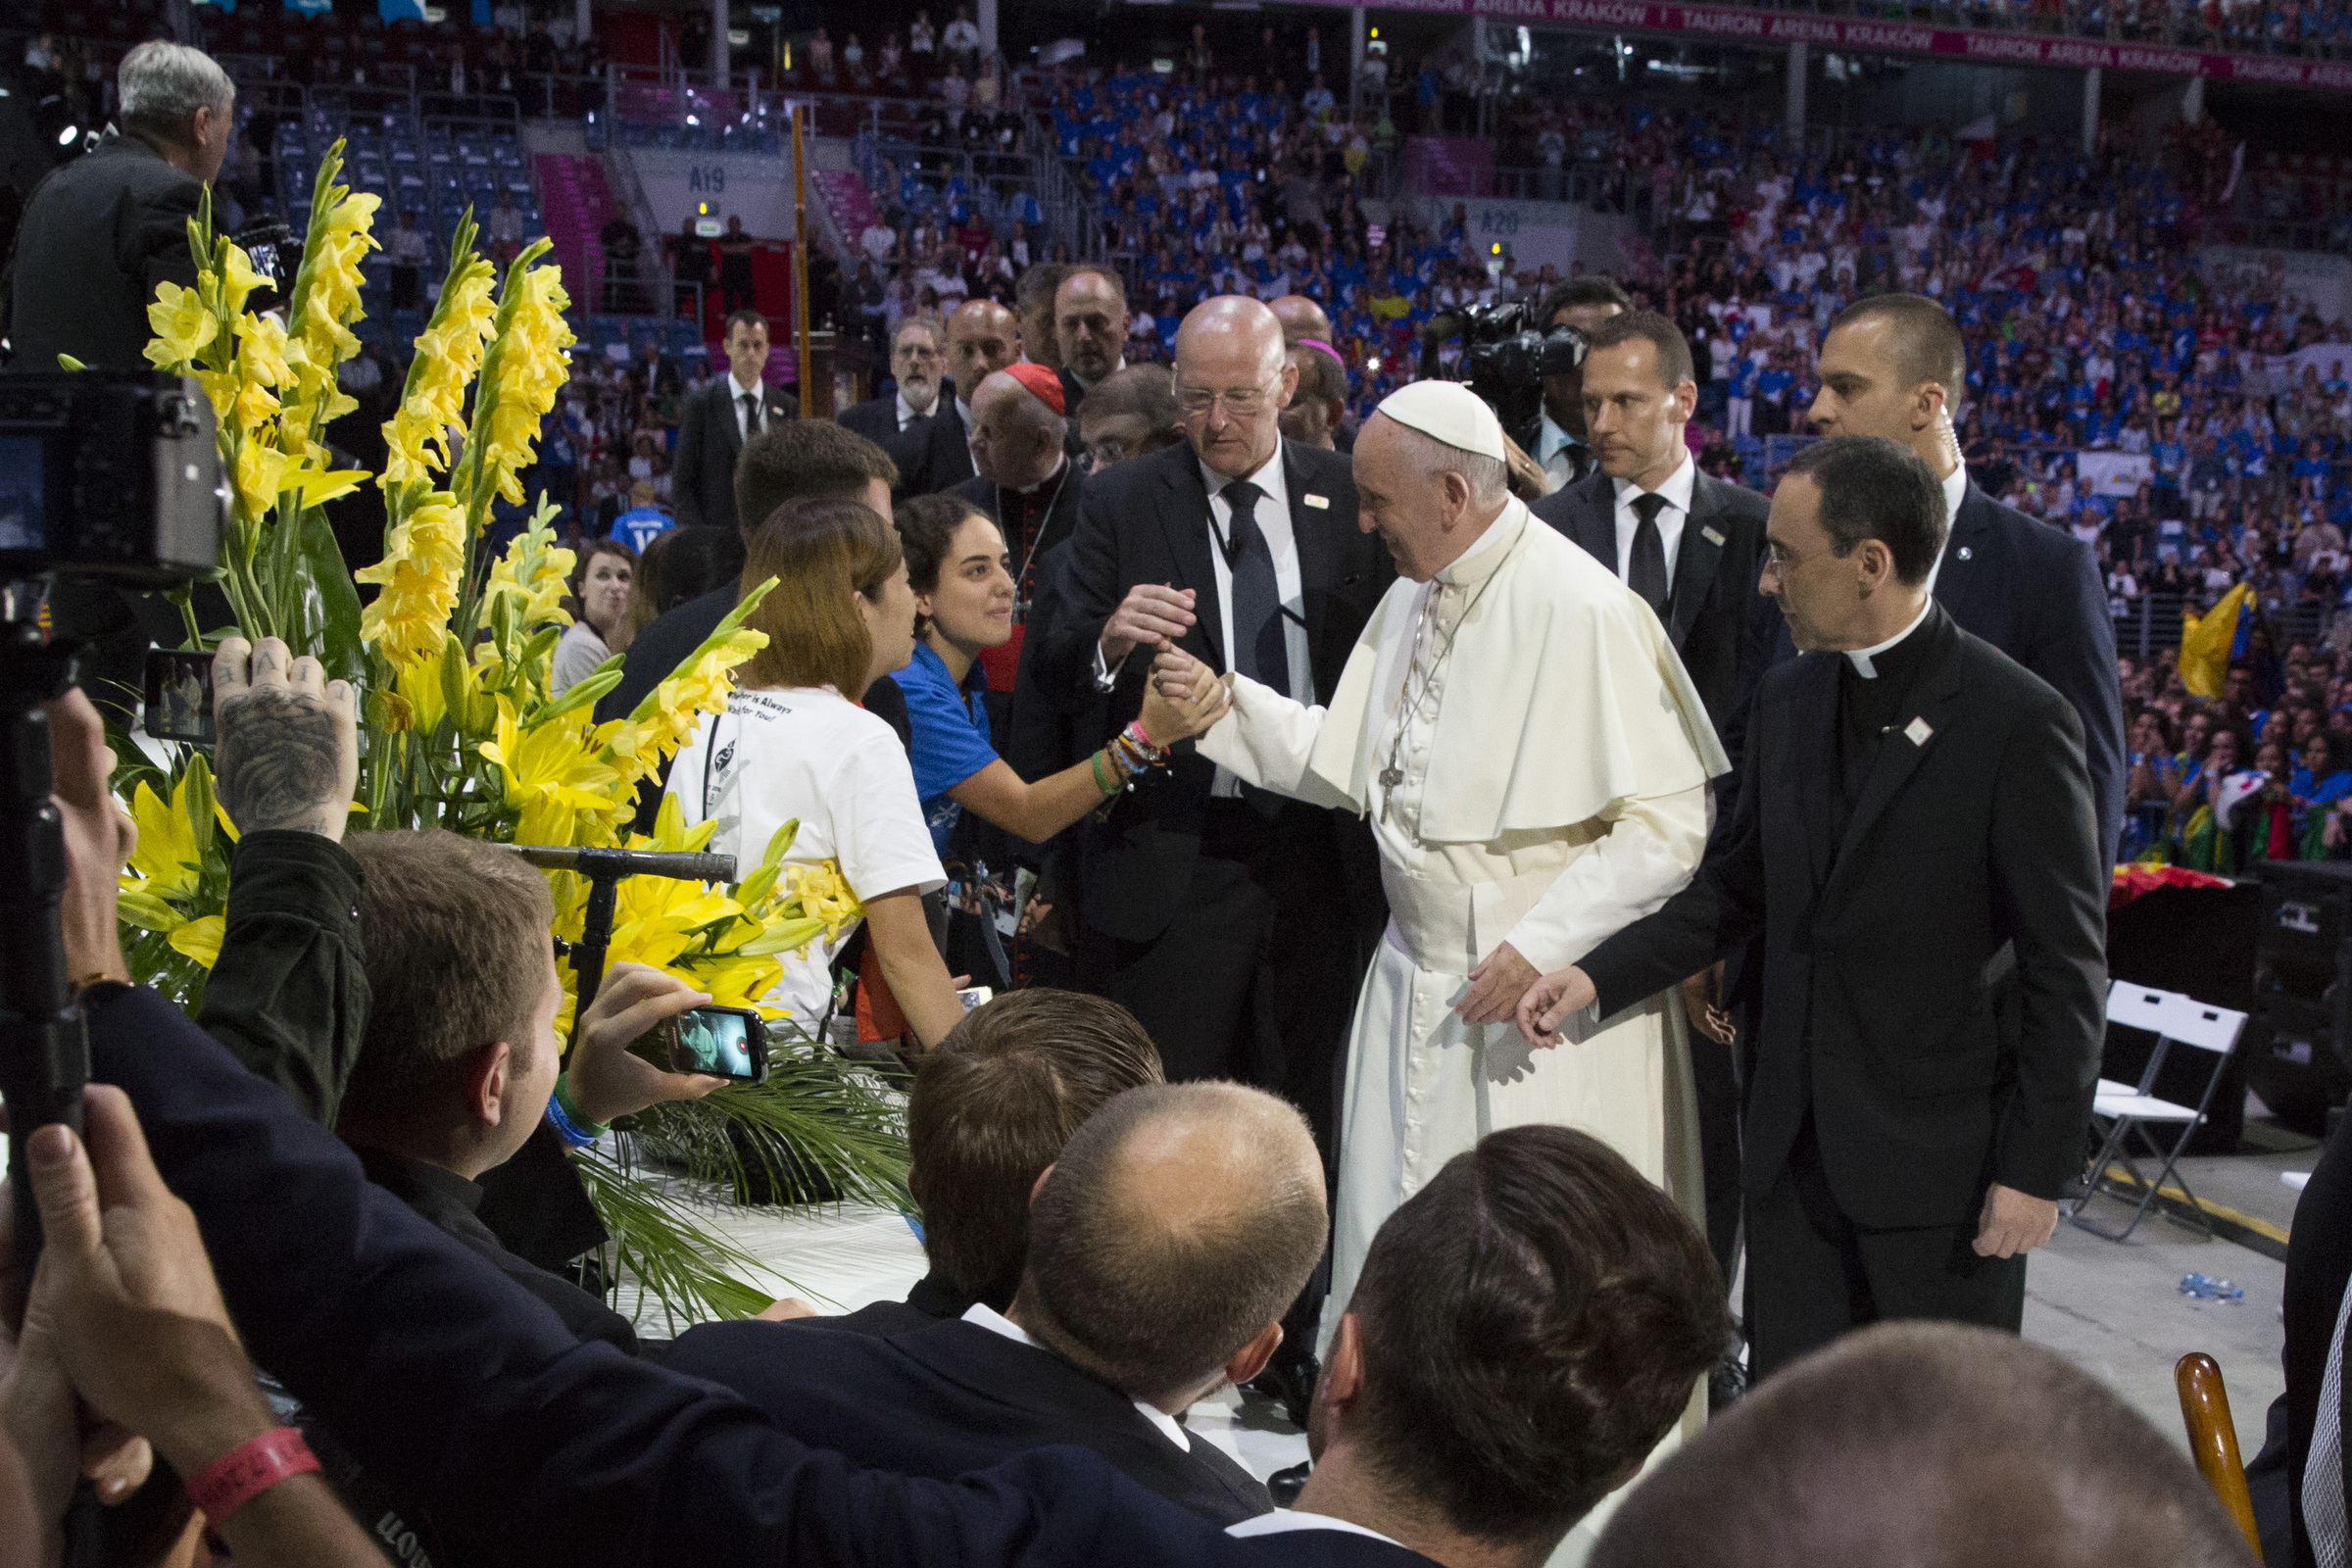 Pope meets volunteers